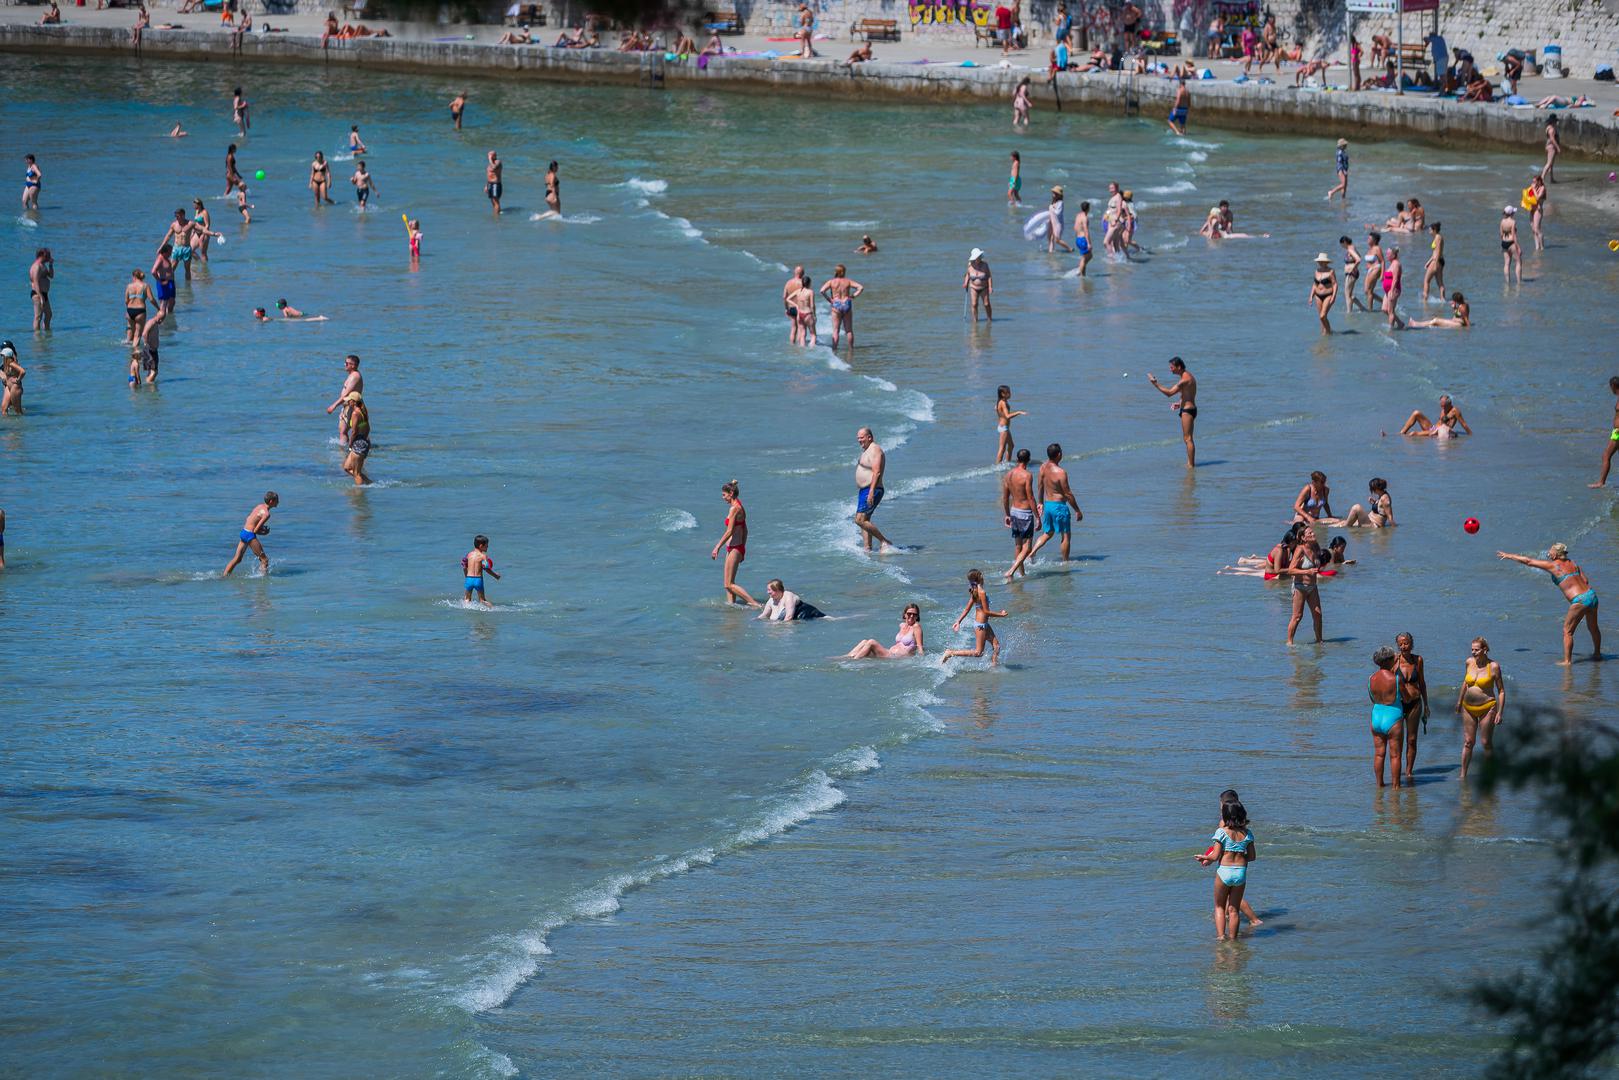 26. Plaža Bačvice, Split: Ukupno mentiona: 19,853; Prošlogodišnji poredak: 25 (↓1)